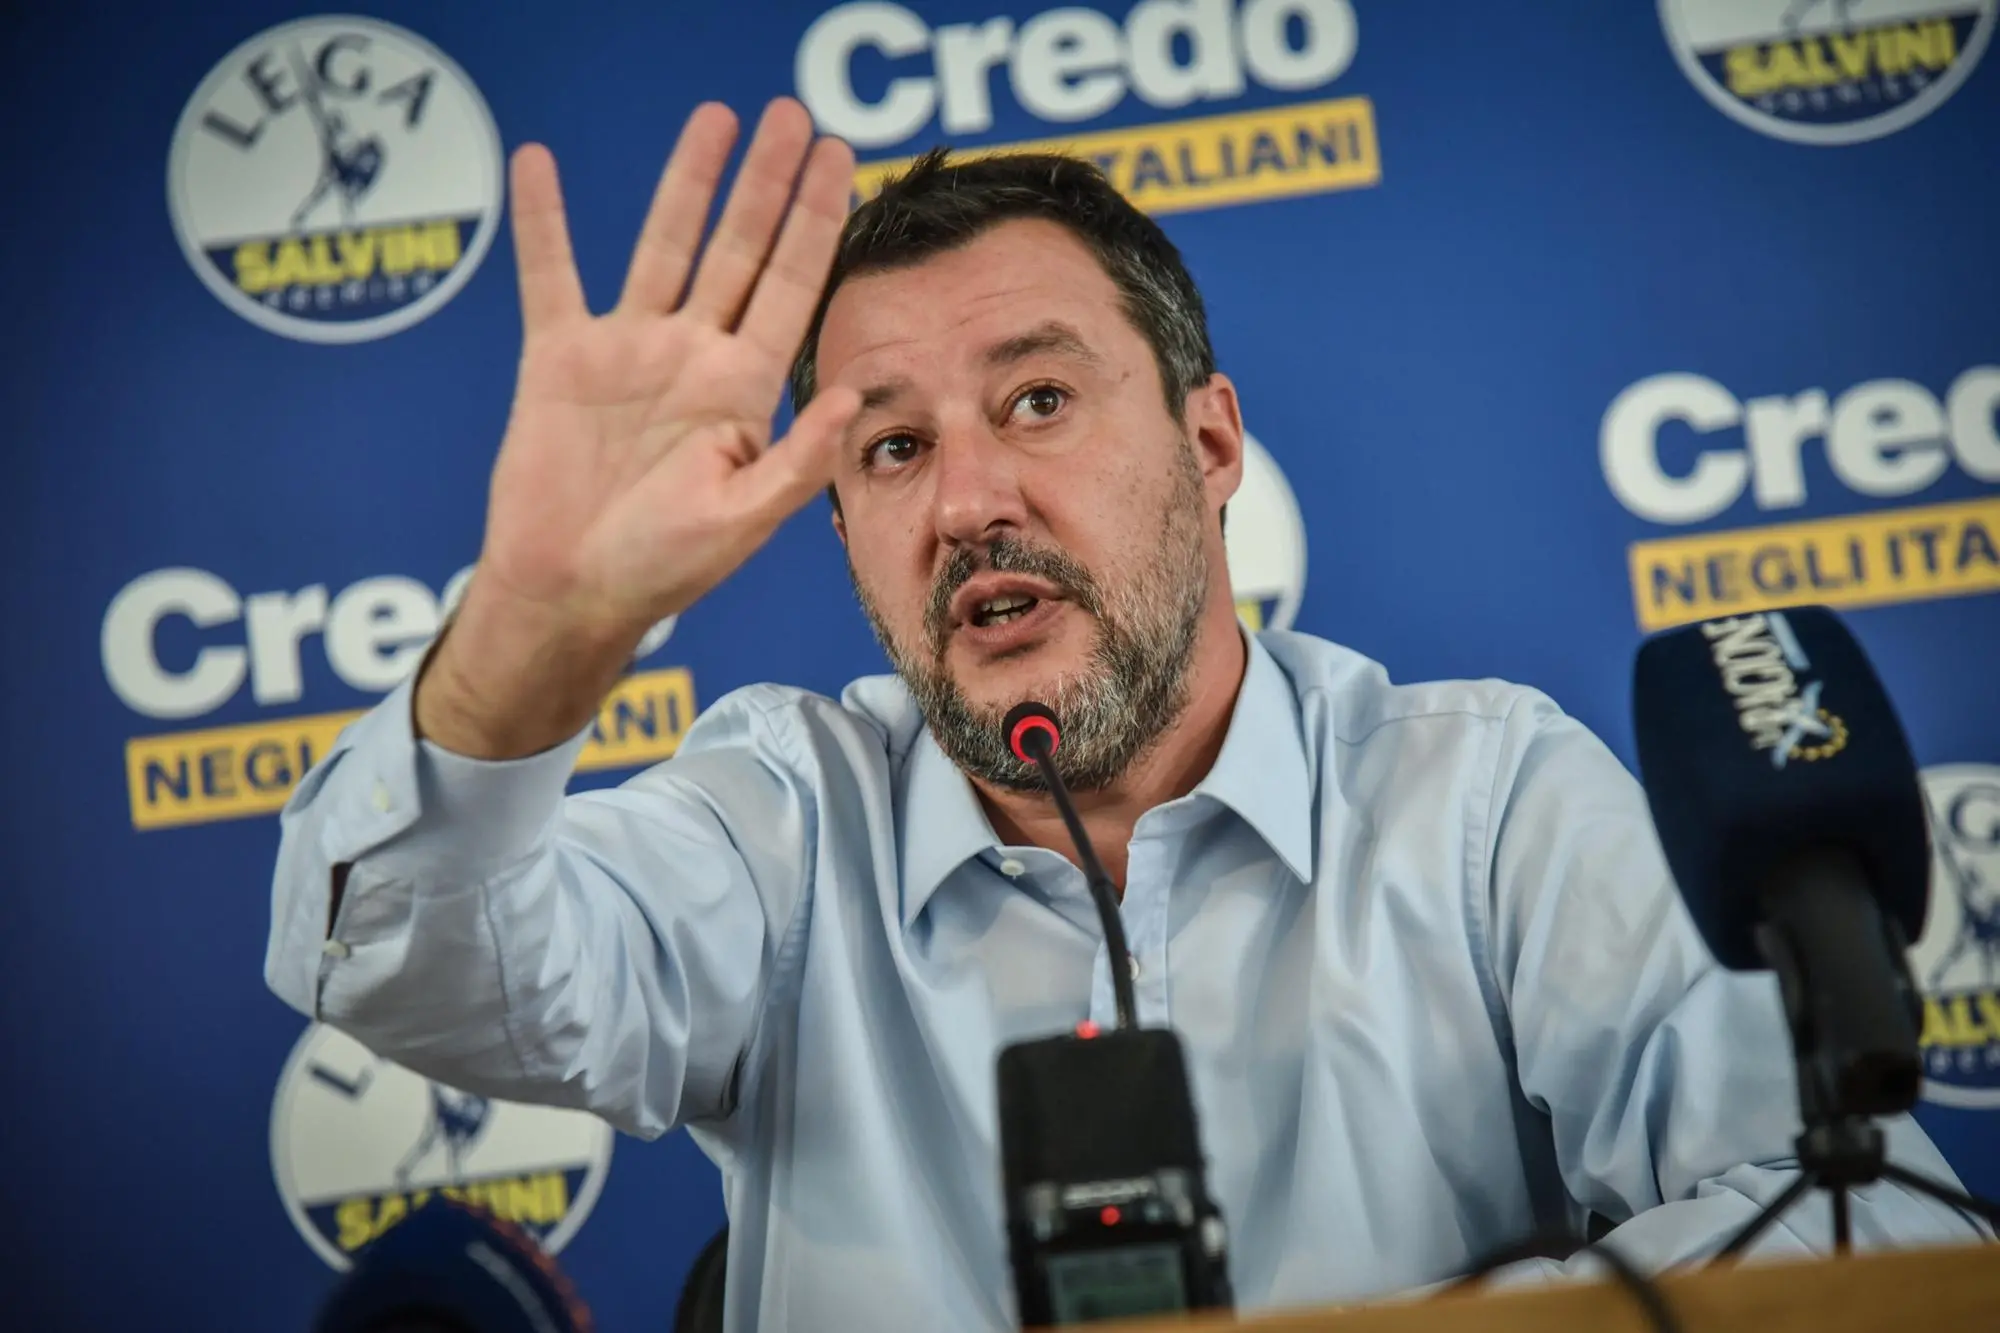 Il Segretario della Lega, Matteo Salvini, parla durante una conferenza stampa nella sede del partito in via Bellerio a Milano, 26 settembre 2022. "Una fase di riorganizzazione del movimento, puntando su sindaci e amministratori, è fondamentale", ha detto Salvini tra le altre cose. ANSA / Matteo Corner